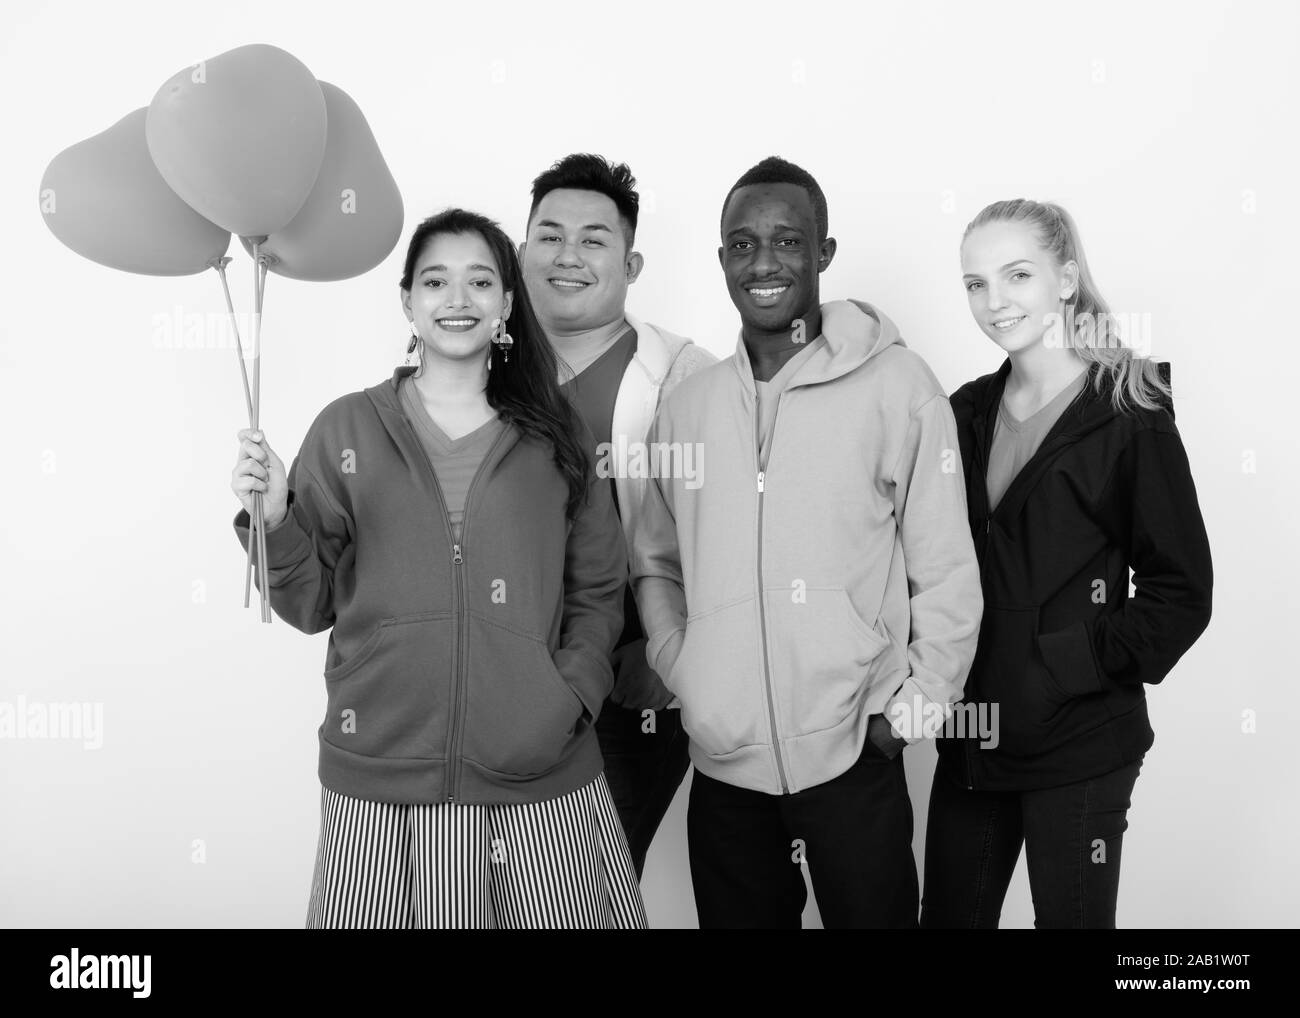 Studio shot of happy groupe diversifié de multi ethnic friends smiling together en maintenant le bouquet de ballons en forme de coeur rouge Banque D'Images